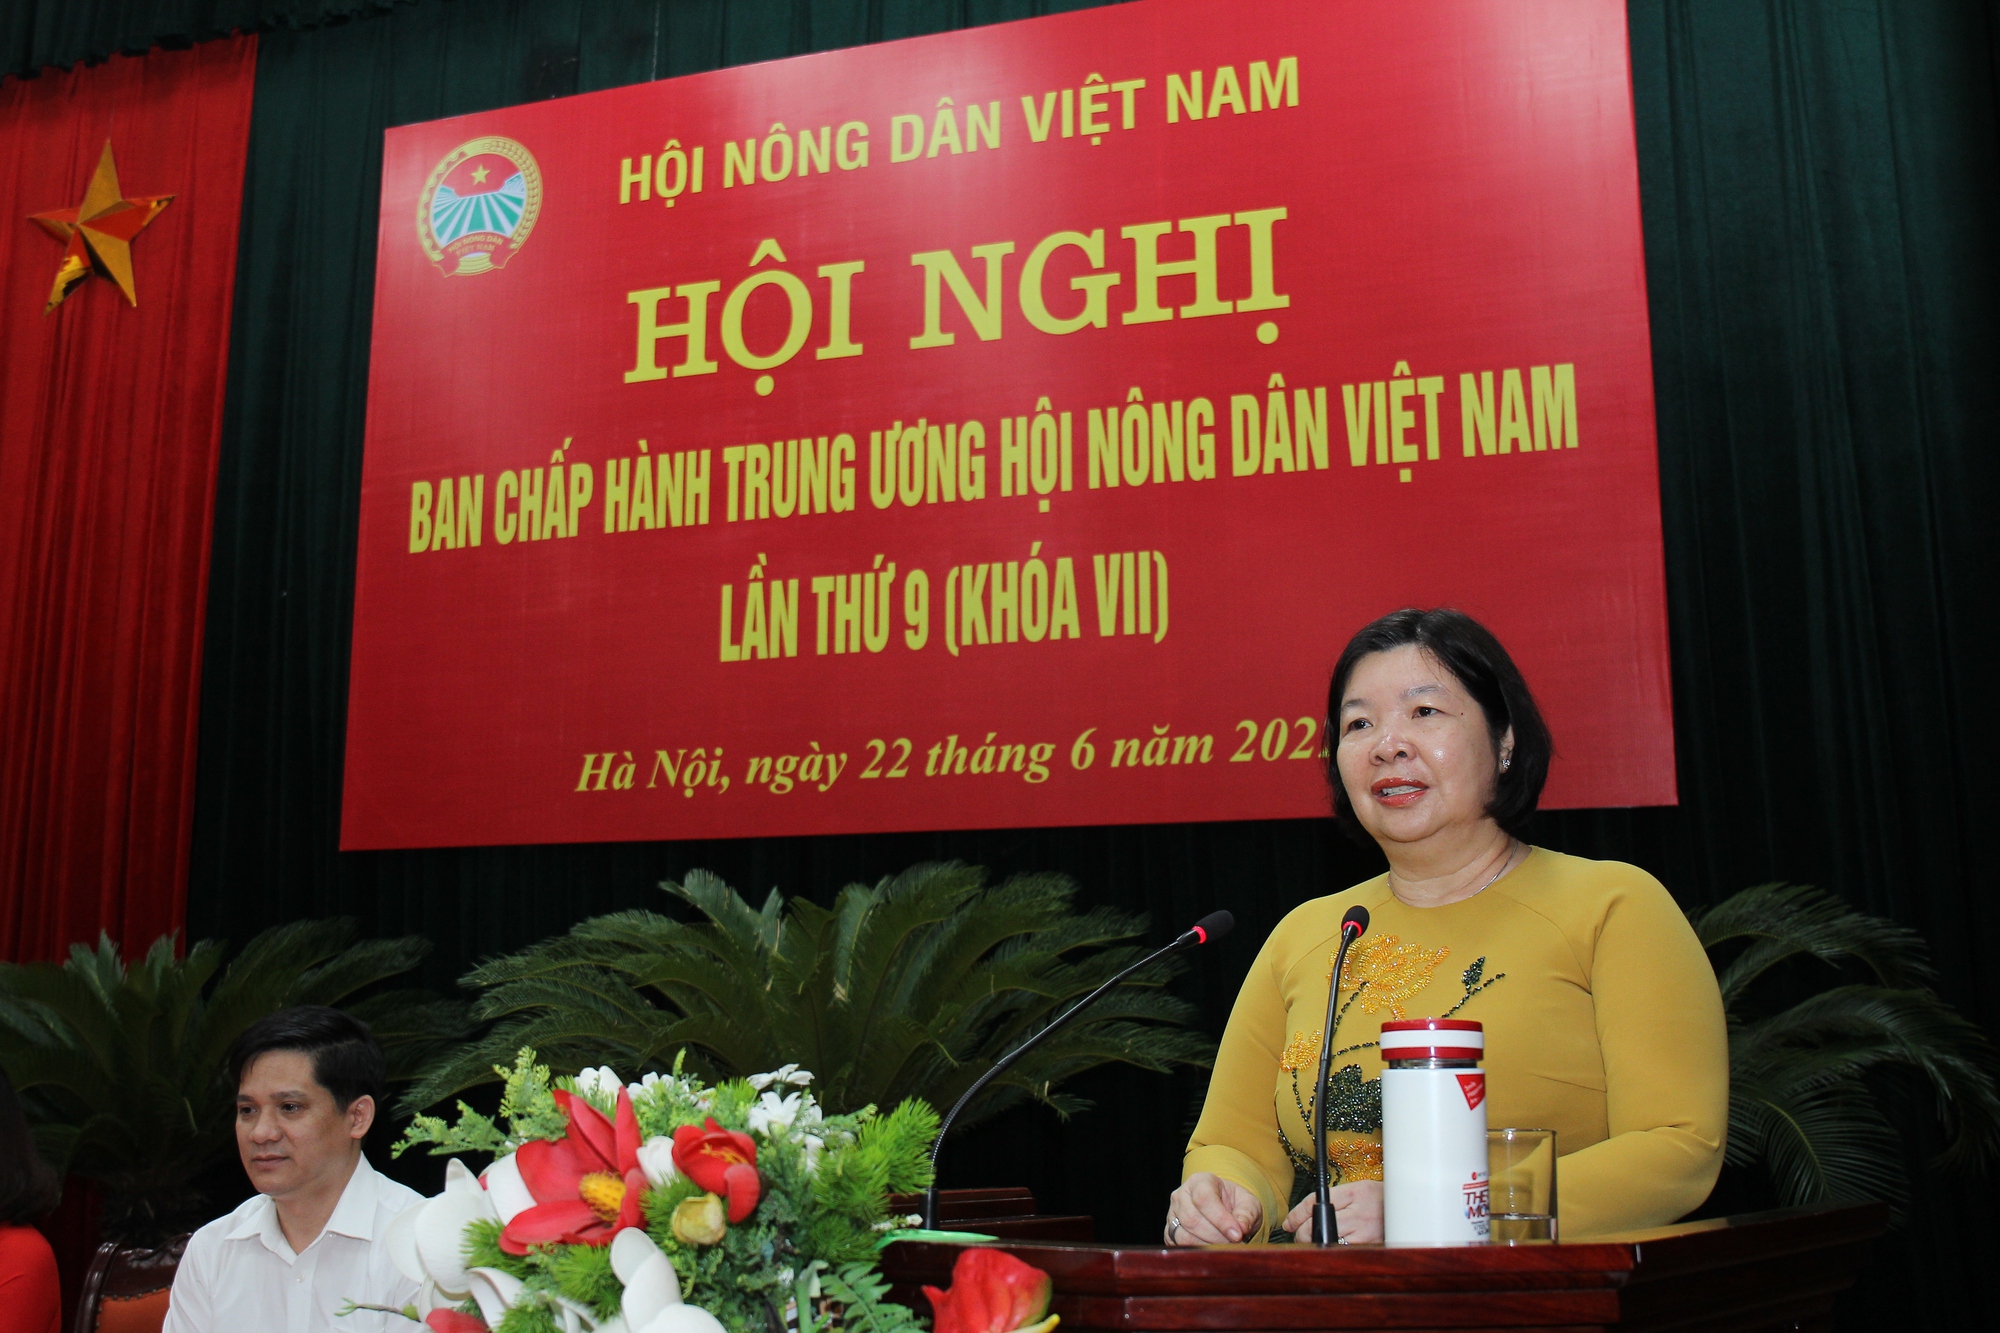 Tin mới: Bà Cao Xuân Thu Vân được bầu làm Phó Chủ tịch Ban Chấp hành Trung ương Hội Nông dân Việt Nam - Ảnh 3.